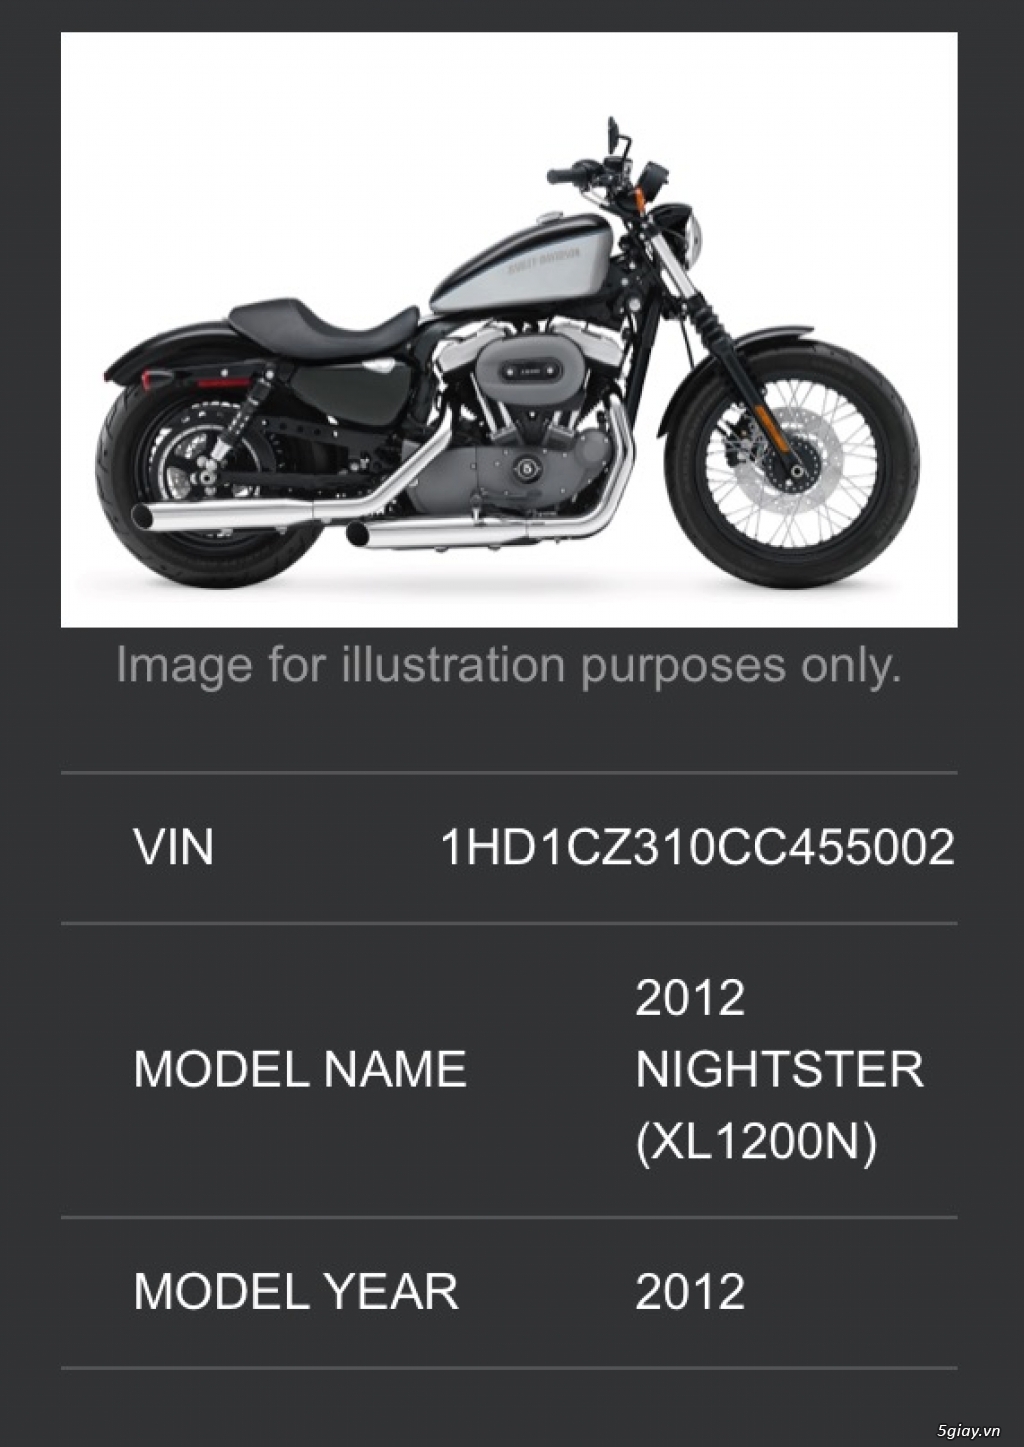 Bán Harley Davidson Nightster 1200cc bản nội địa Mỹ 2015 - 8